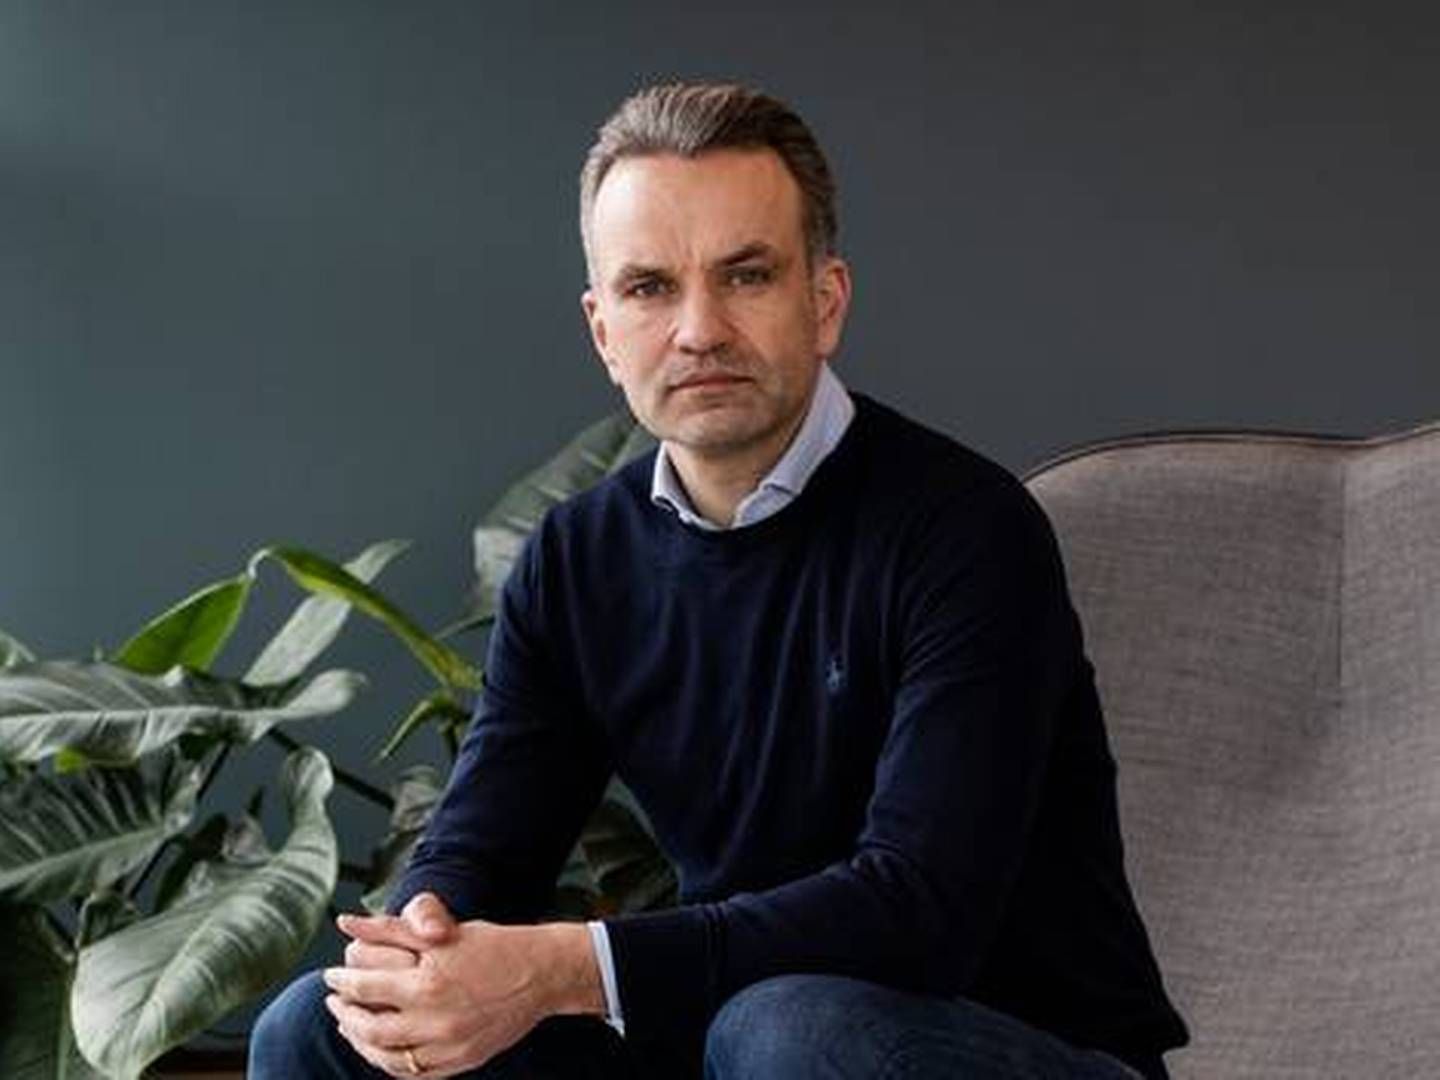 Stefan Plenge er adm. direktør og medejer i Nemlig.com. | Foto: Gregers Tycho